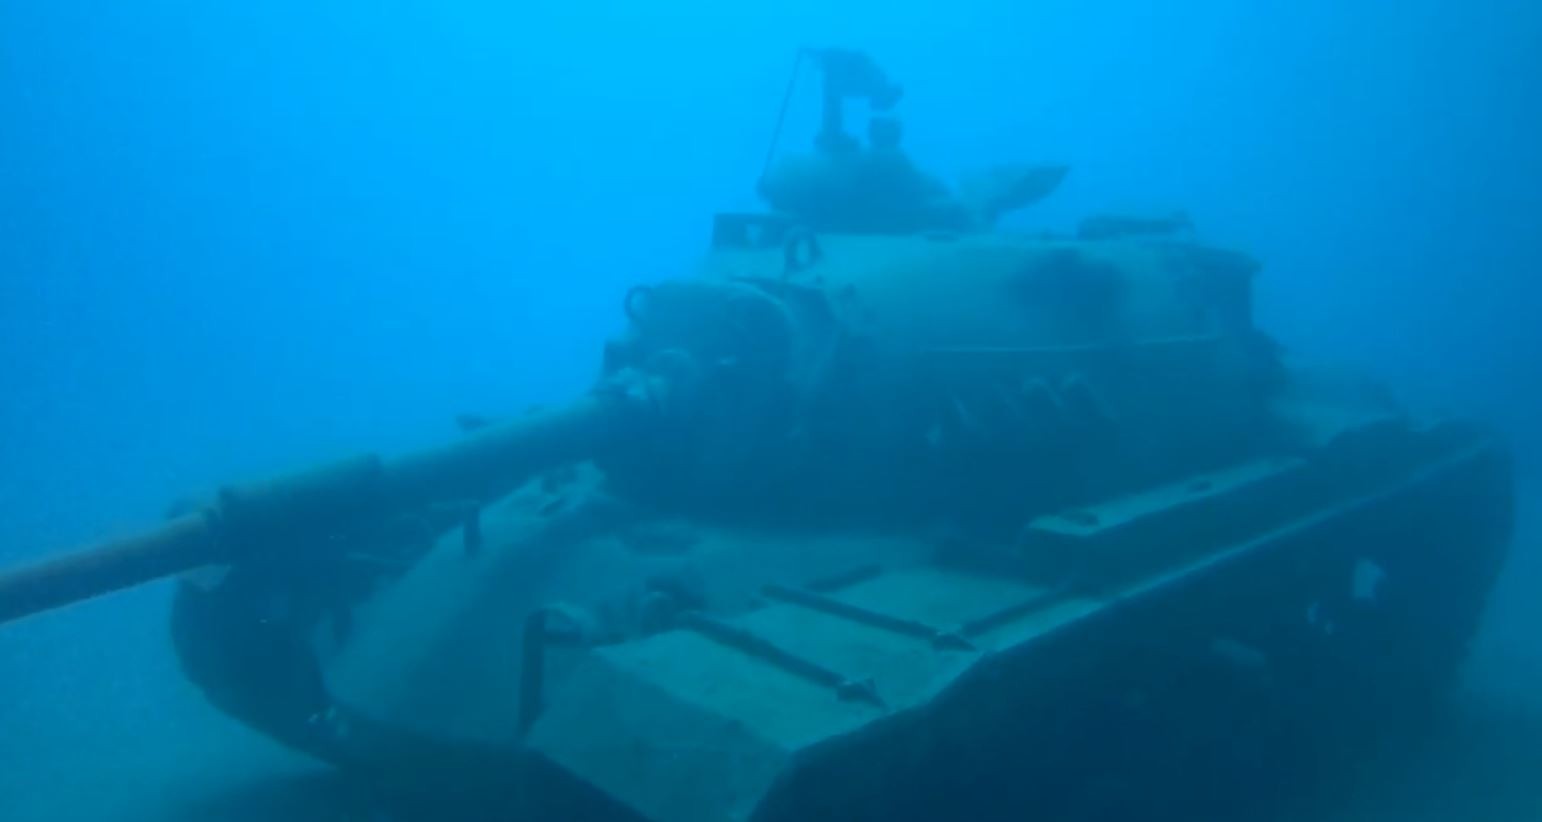 Su altındaki 45 tonluk tank dalış turizminin gözdesi oldu